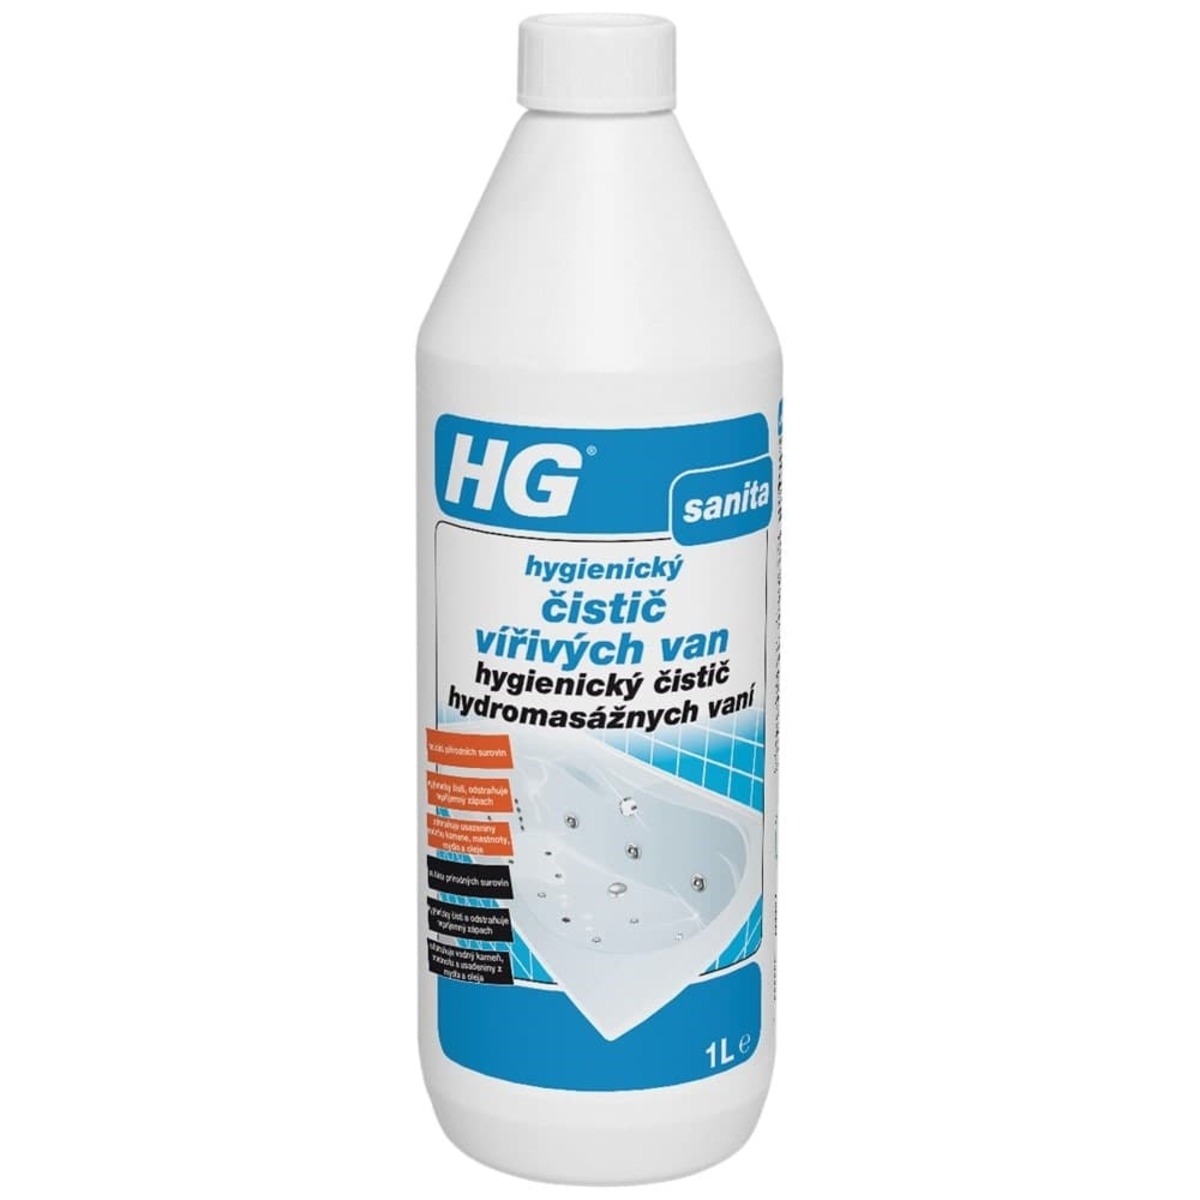 HG hygienický čistič vířivých van HGHCVV HG